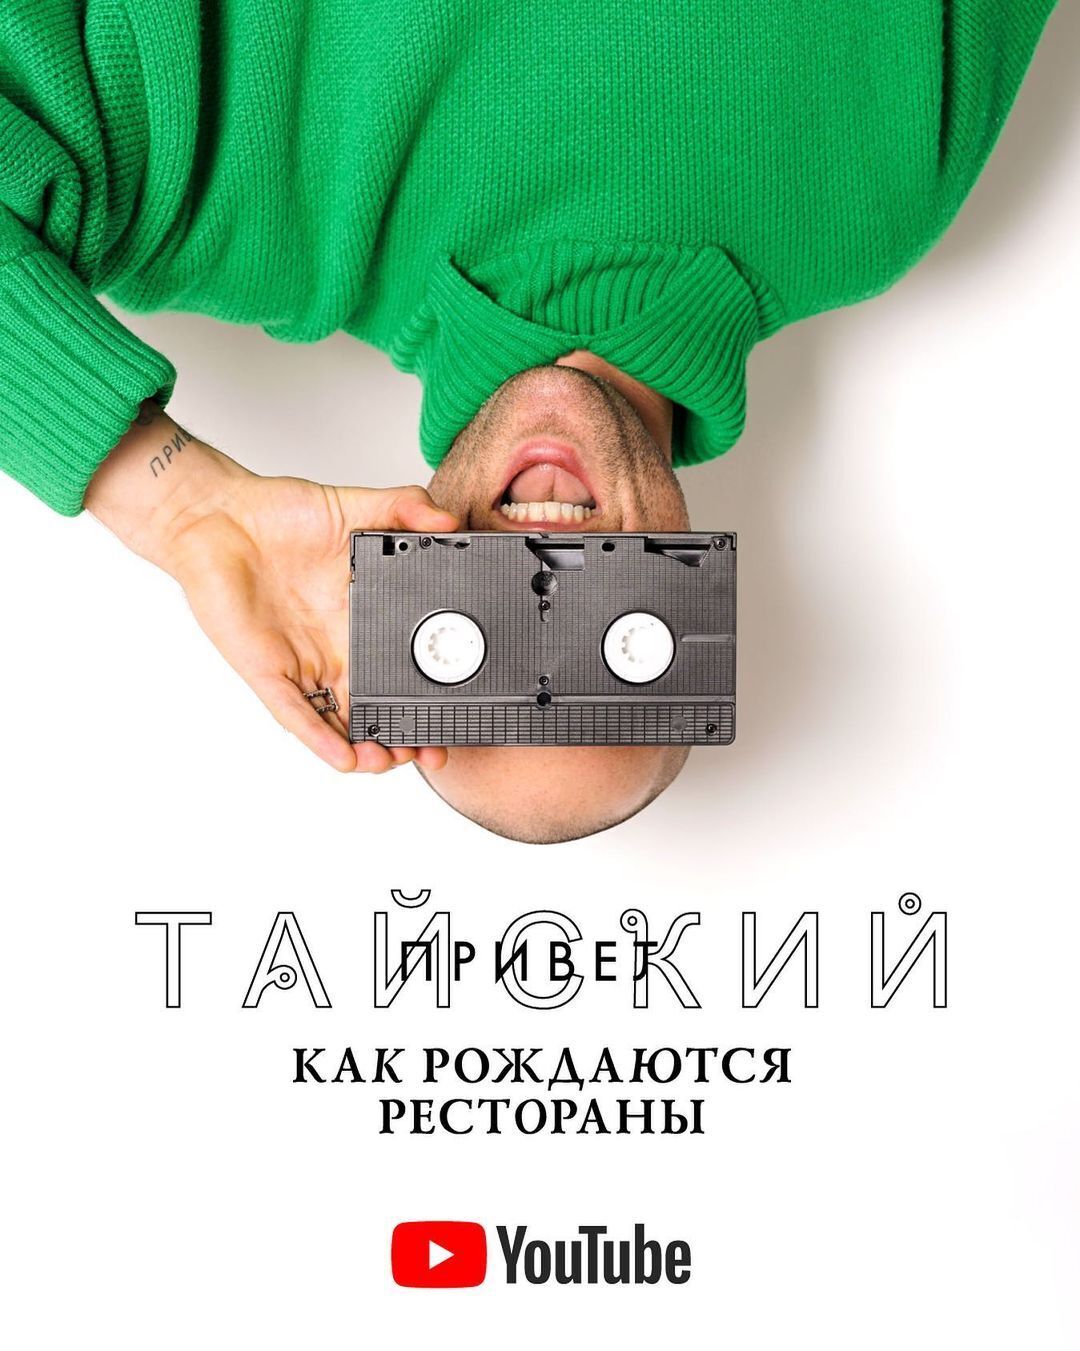 Михайло Кацурін має яскраво-зелений светр